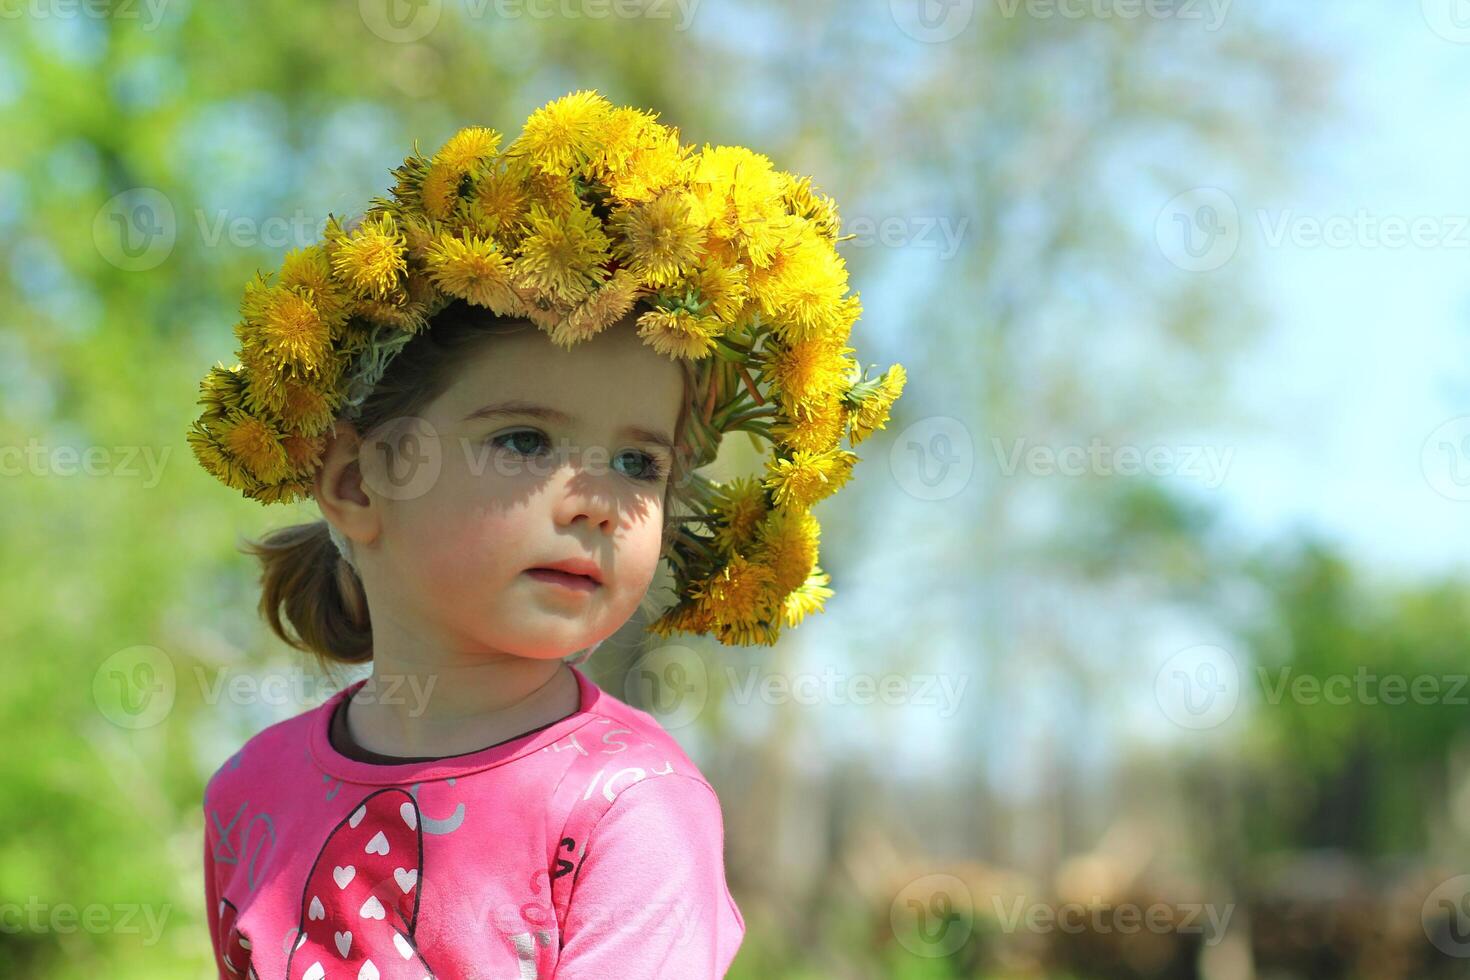 primavera retrato de un linda dos años antiguo niña posando con un diente de león guirnalda foto